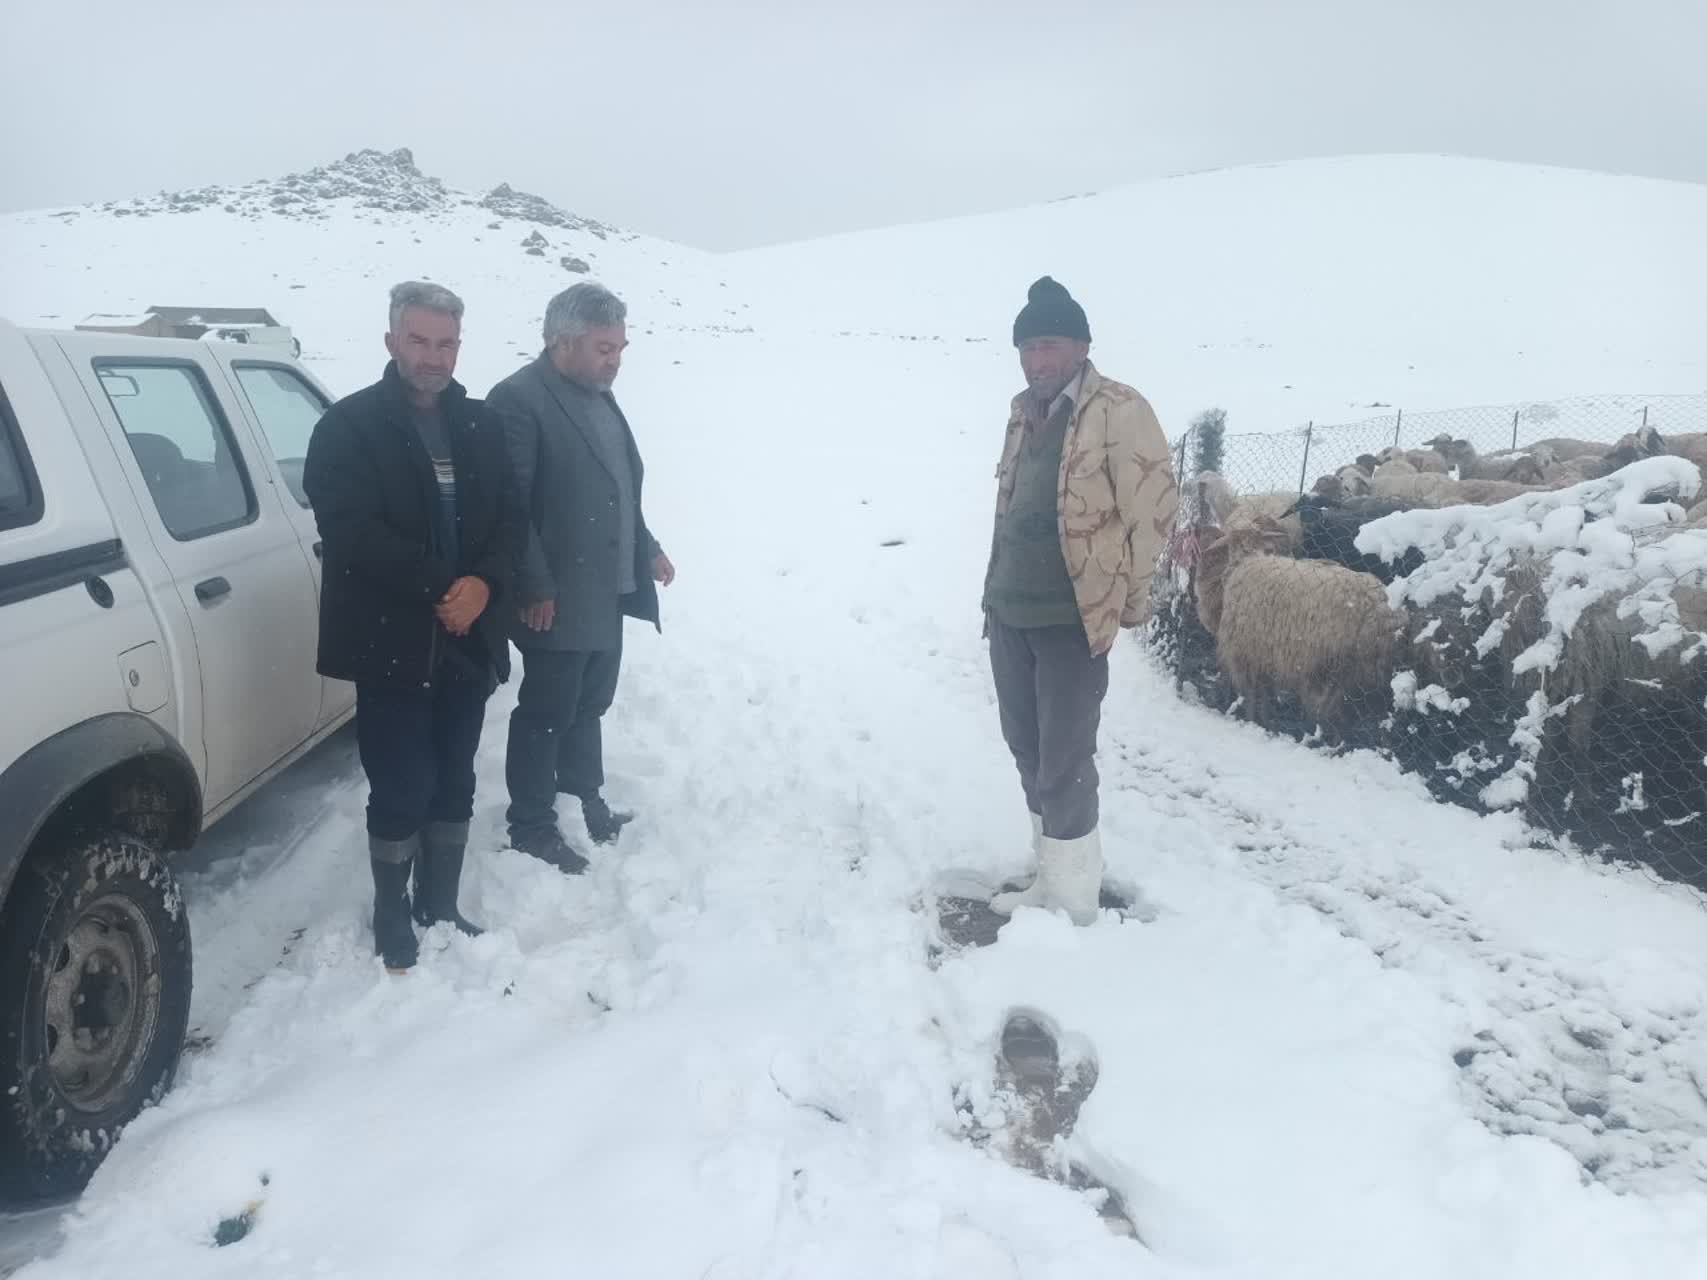 بارش برف در ماه دوم فصل بهار، عشایر در حال کوچ استان راغافلگیر کرد.